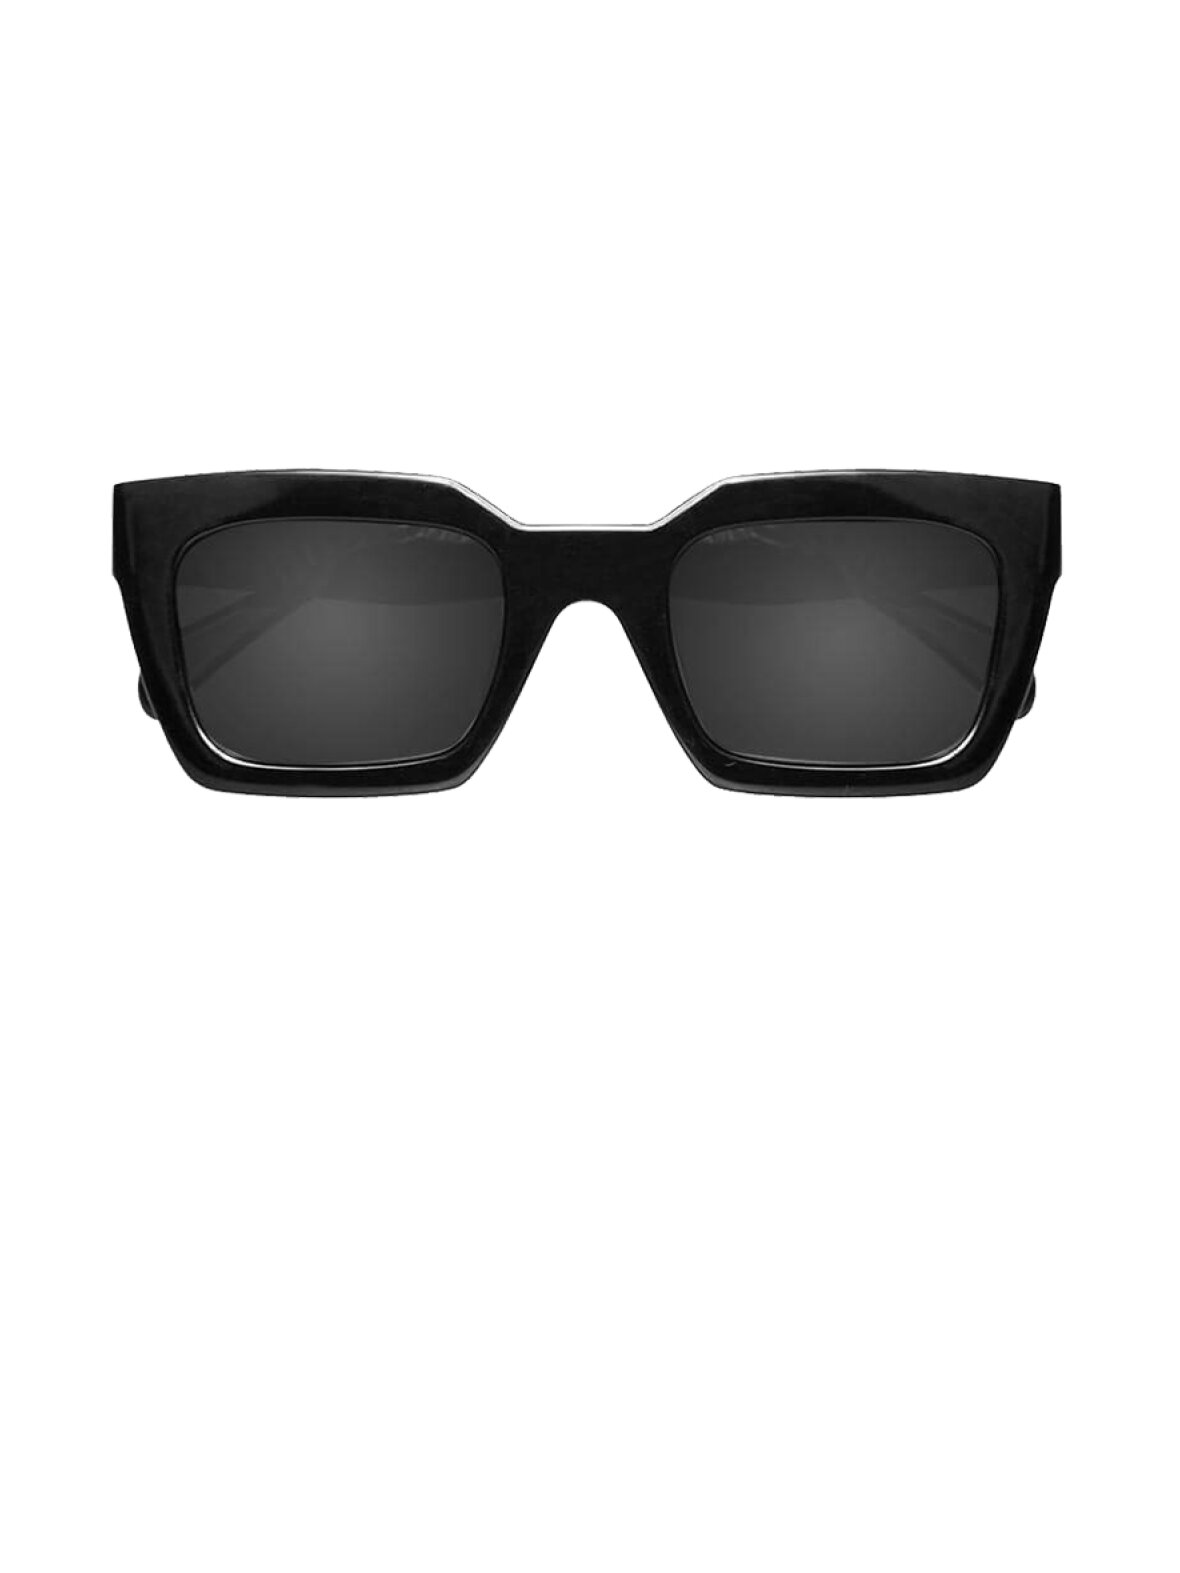 Stifte bekendtskab Udøve sport Sump A'POKE - Anine Bing Indio Sunglasses Black - Shop sorte solbriller